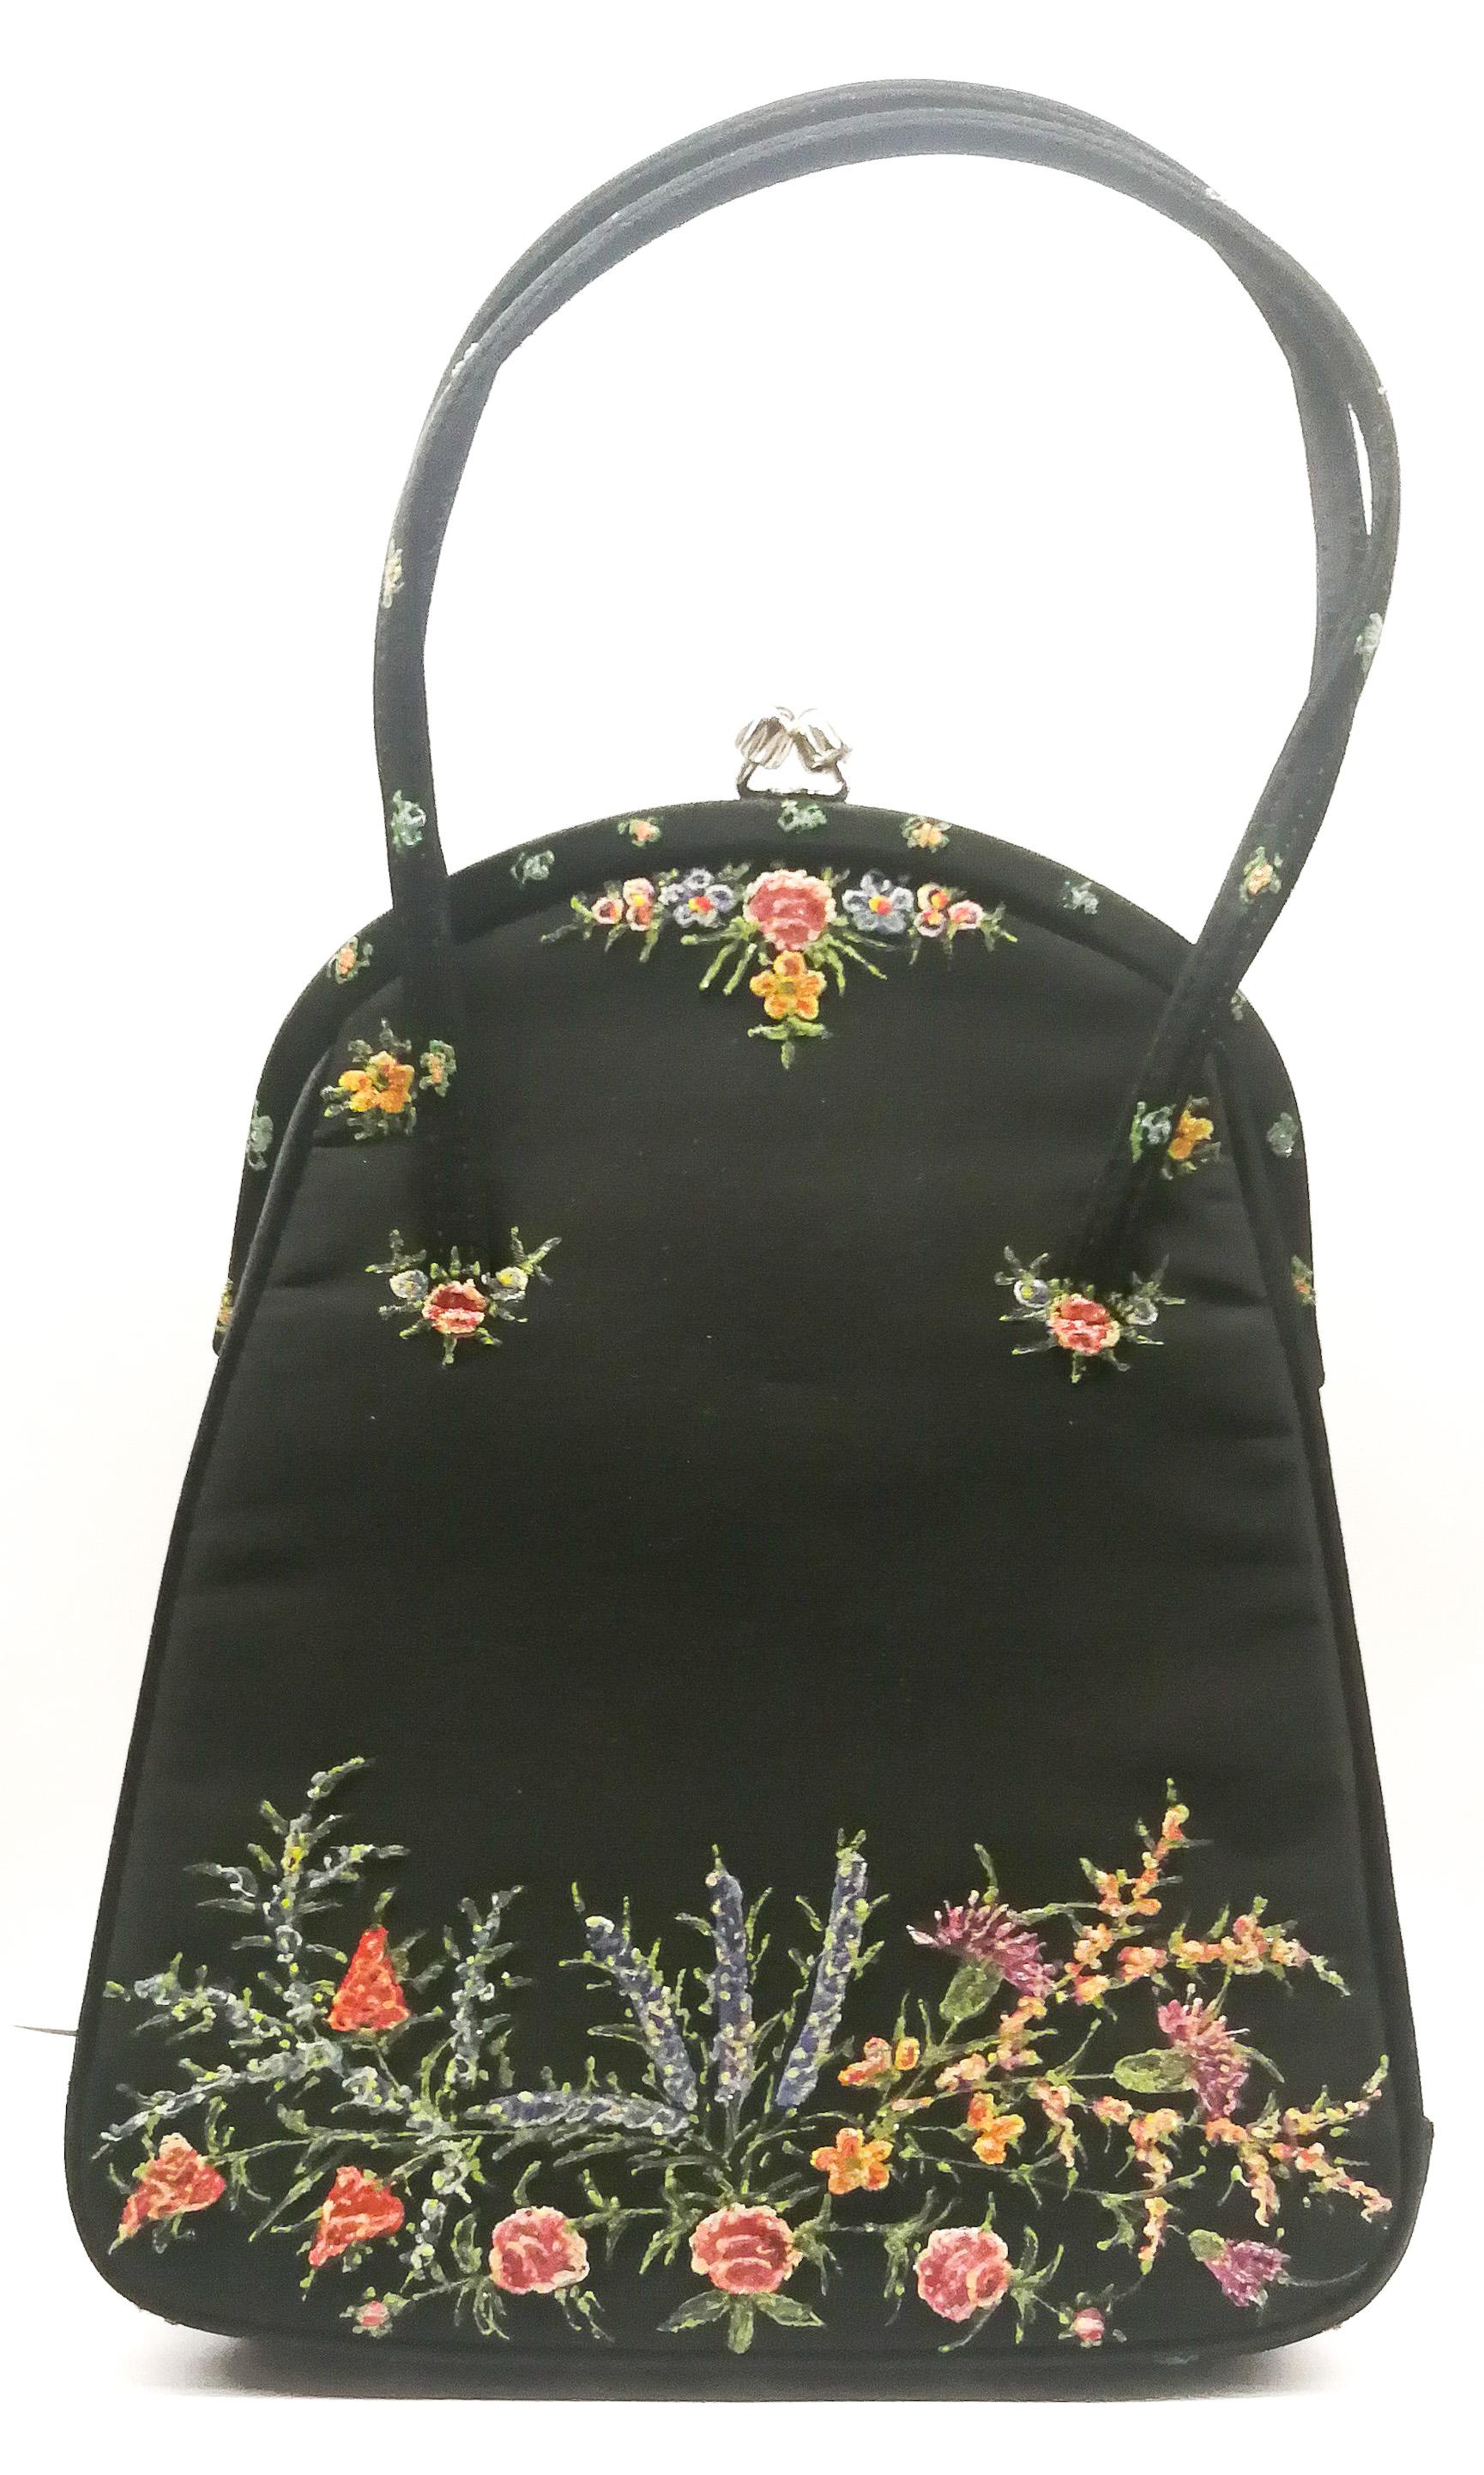 floral design handbags